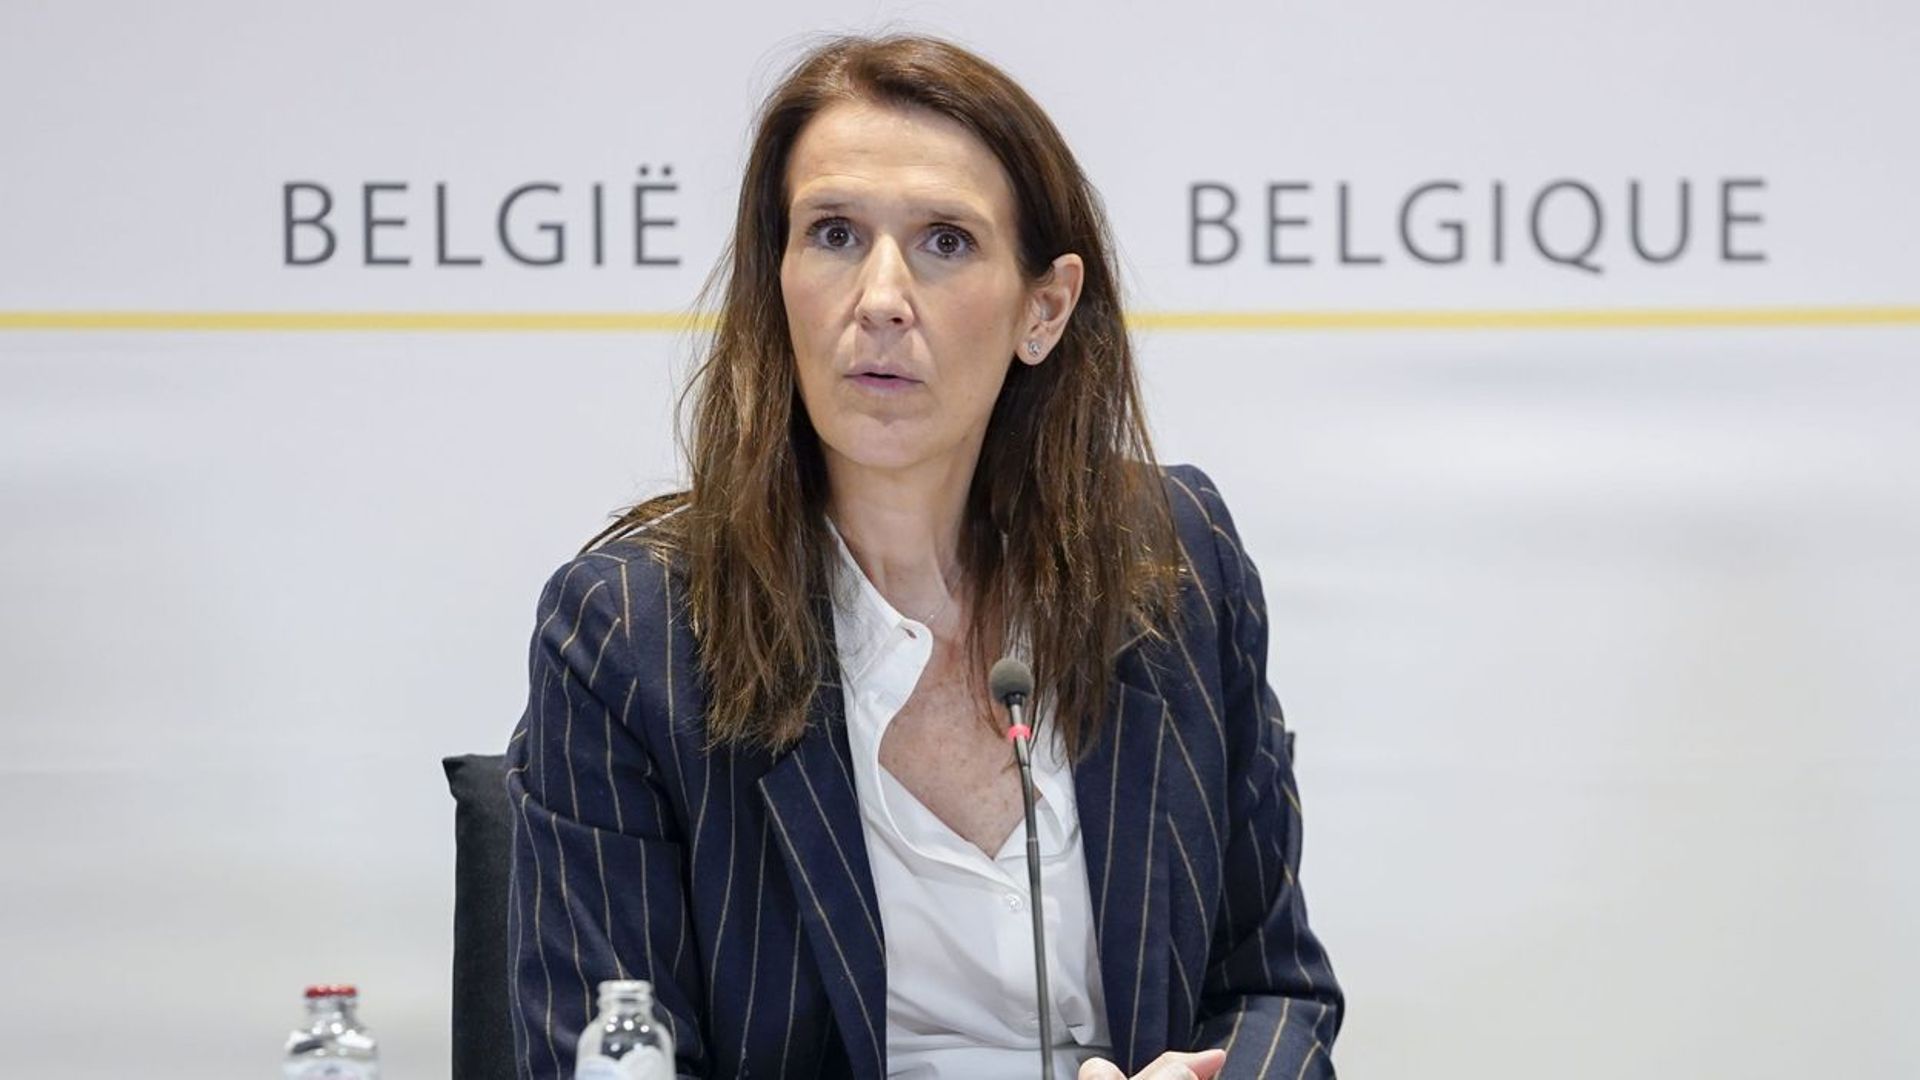 Le superkern s'accorde sur des mesures de soutien au pouvoir d’achat des Belges et aux secteurs en difficulté